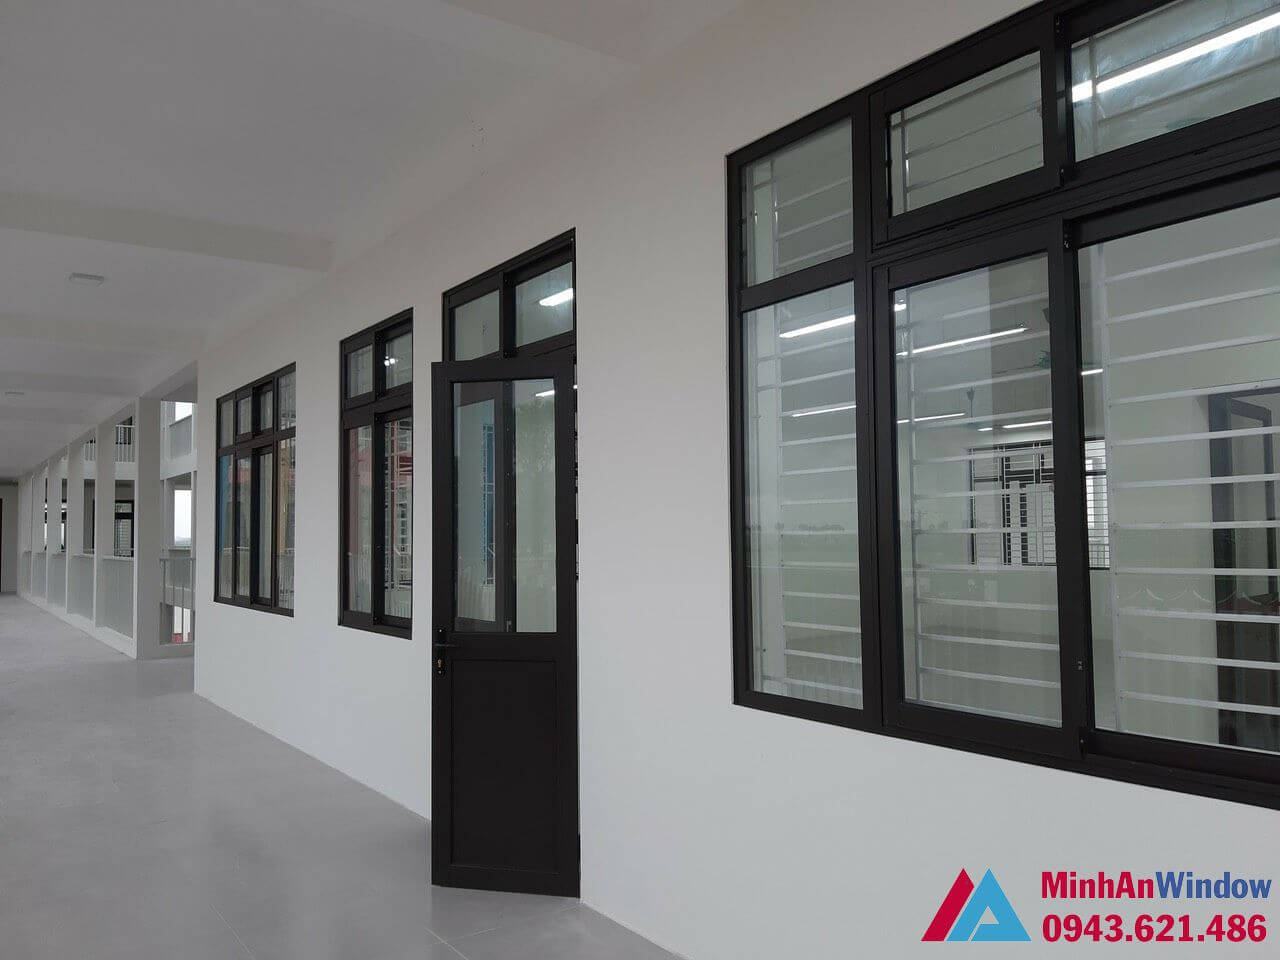 Mẫu cửa đi và cửa sổ nhôm kính tại cụm công nghiệp Đại Xuyên - Hà Nội do Minh An Window lắp đặt